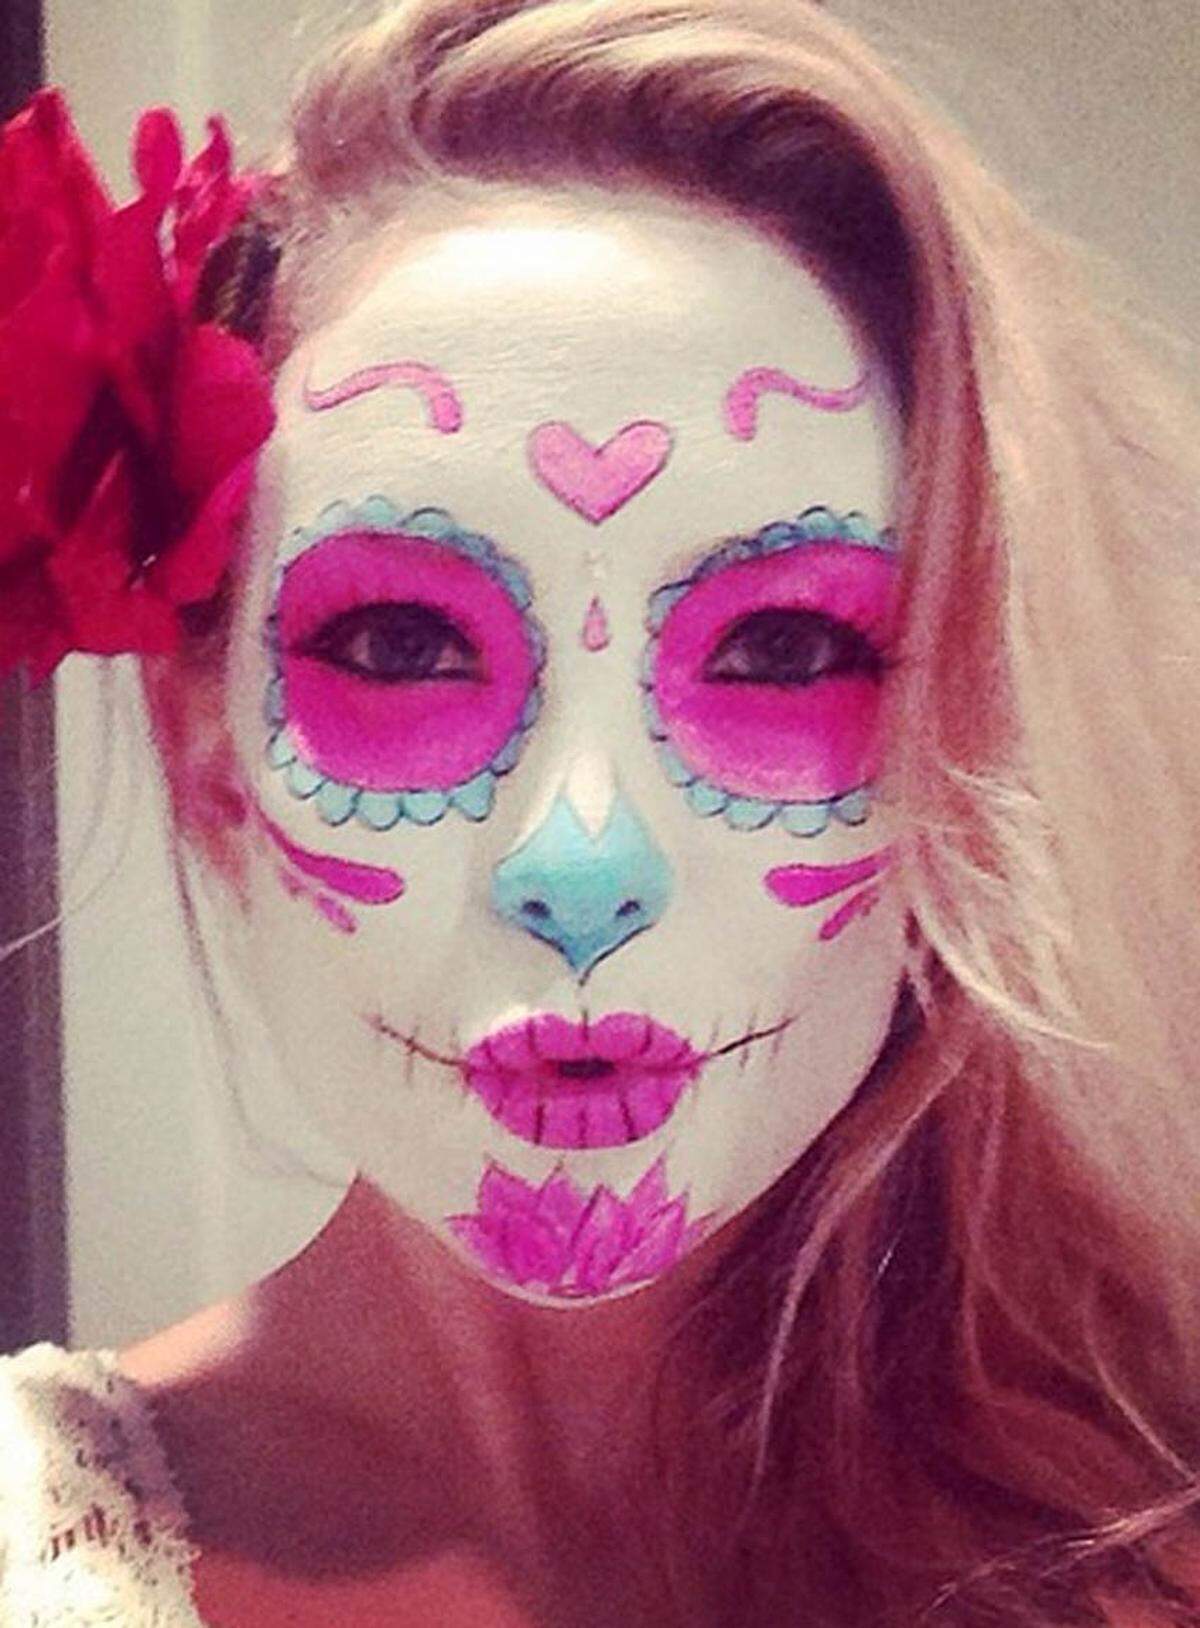 Kate Hudson ließ sich von mexikanischen Totenmasken inspirieren.